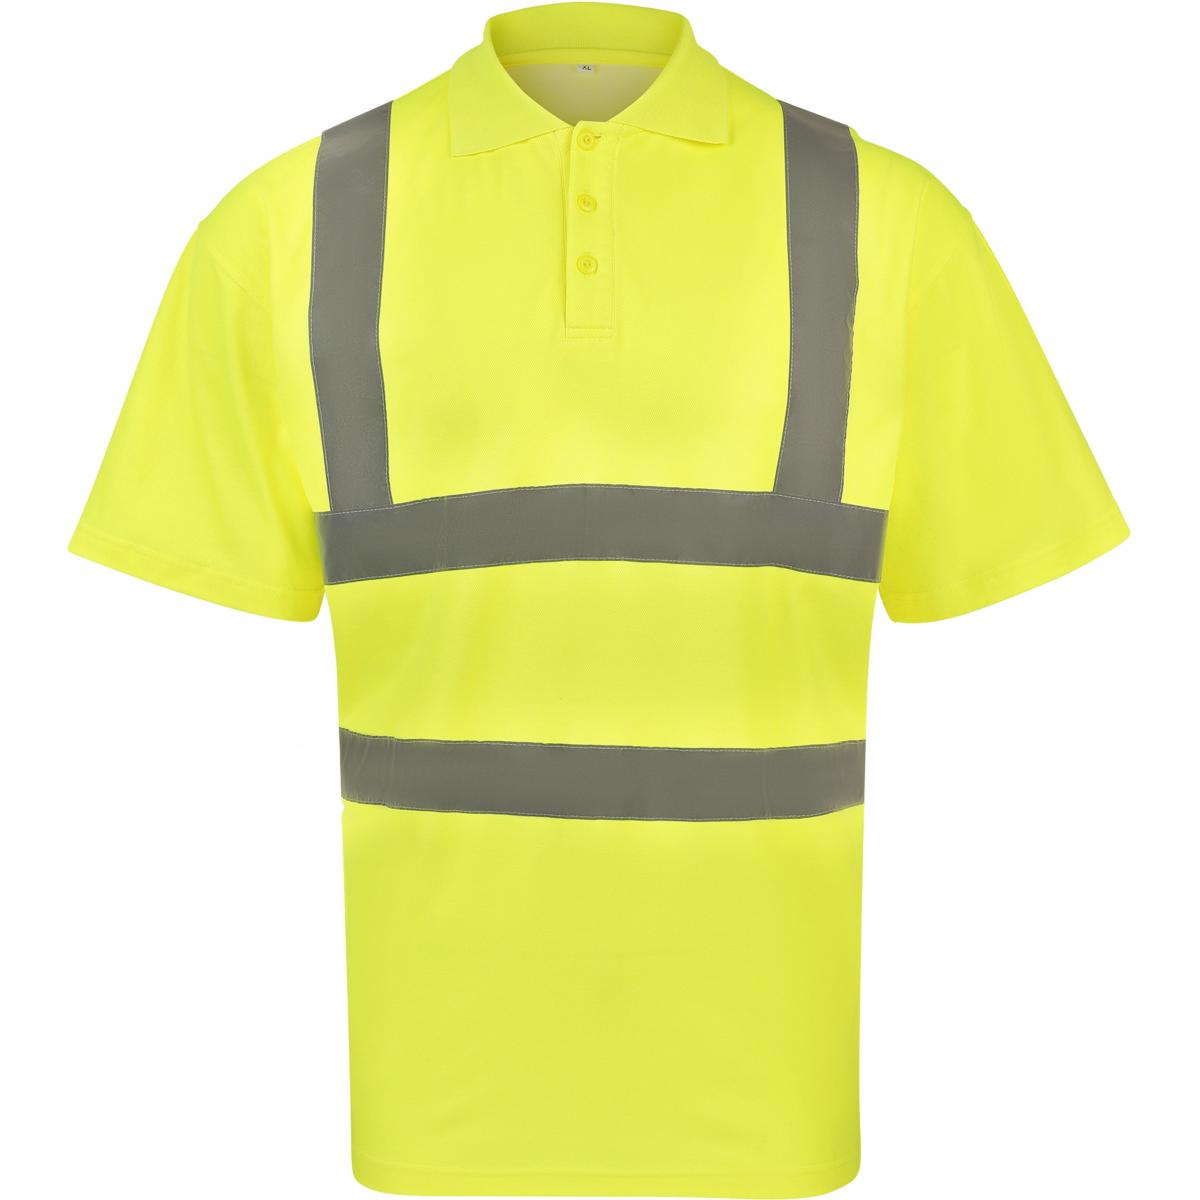 Hersteller: Korntex Herstellernummer: KXPCPOLO Artikelbezeichnung: Herren Polo Blended fabric Poloshirt Farbe: Signal Yellow